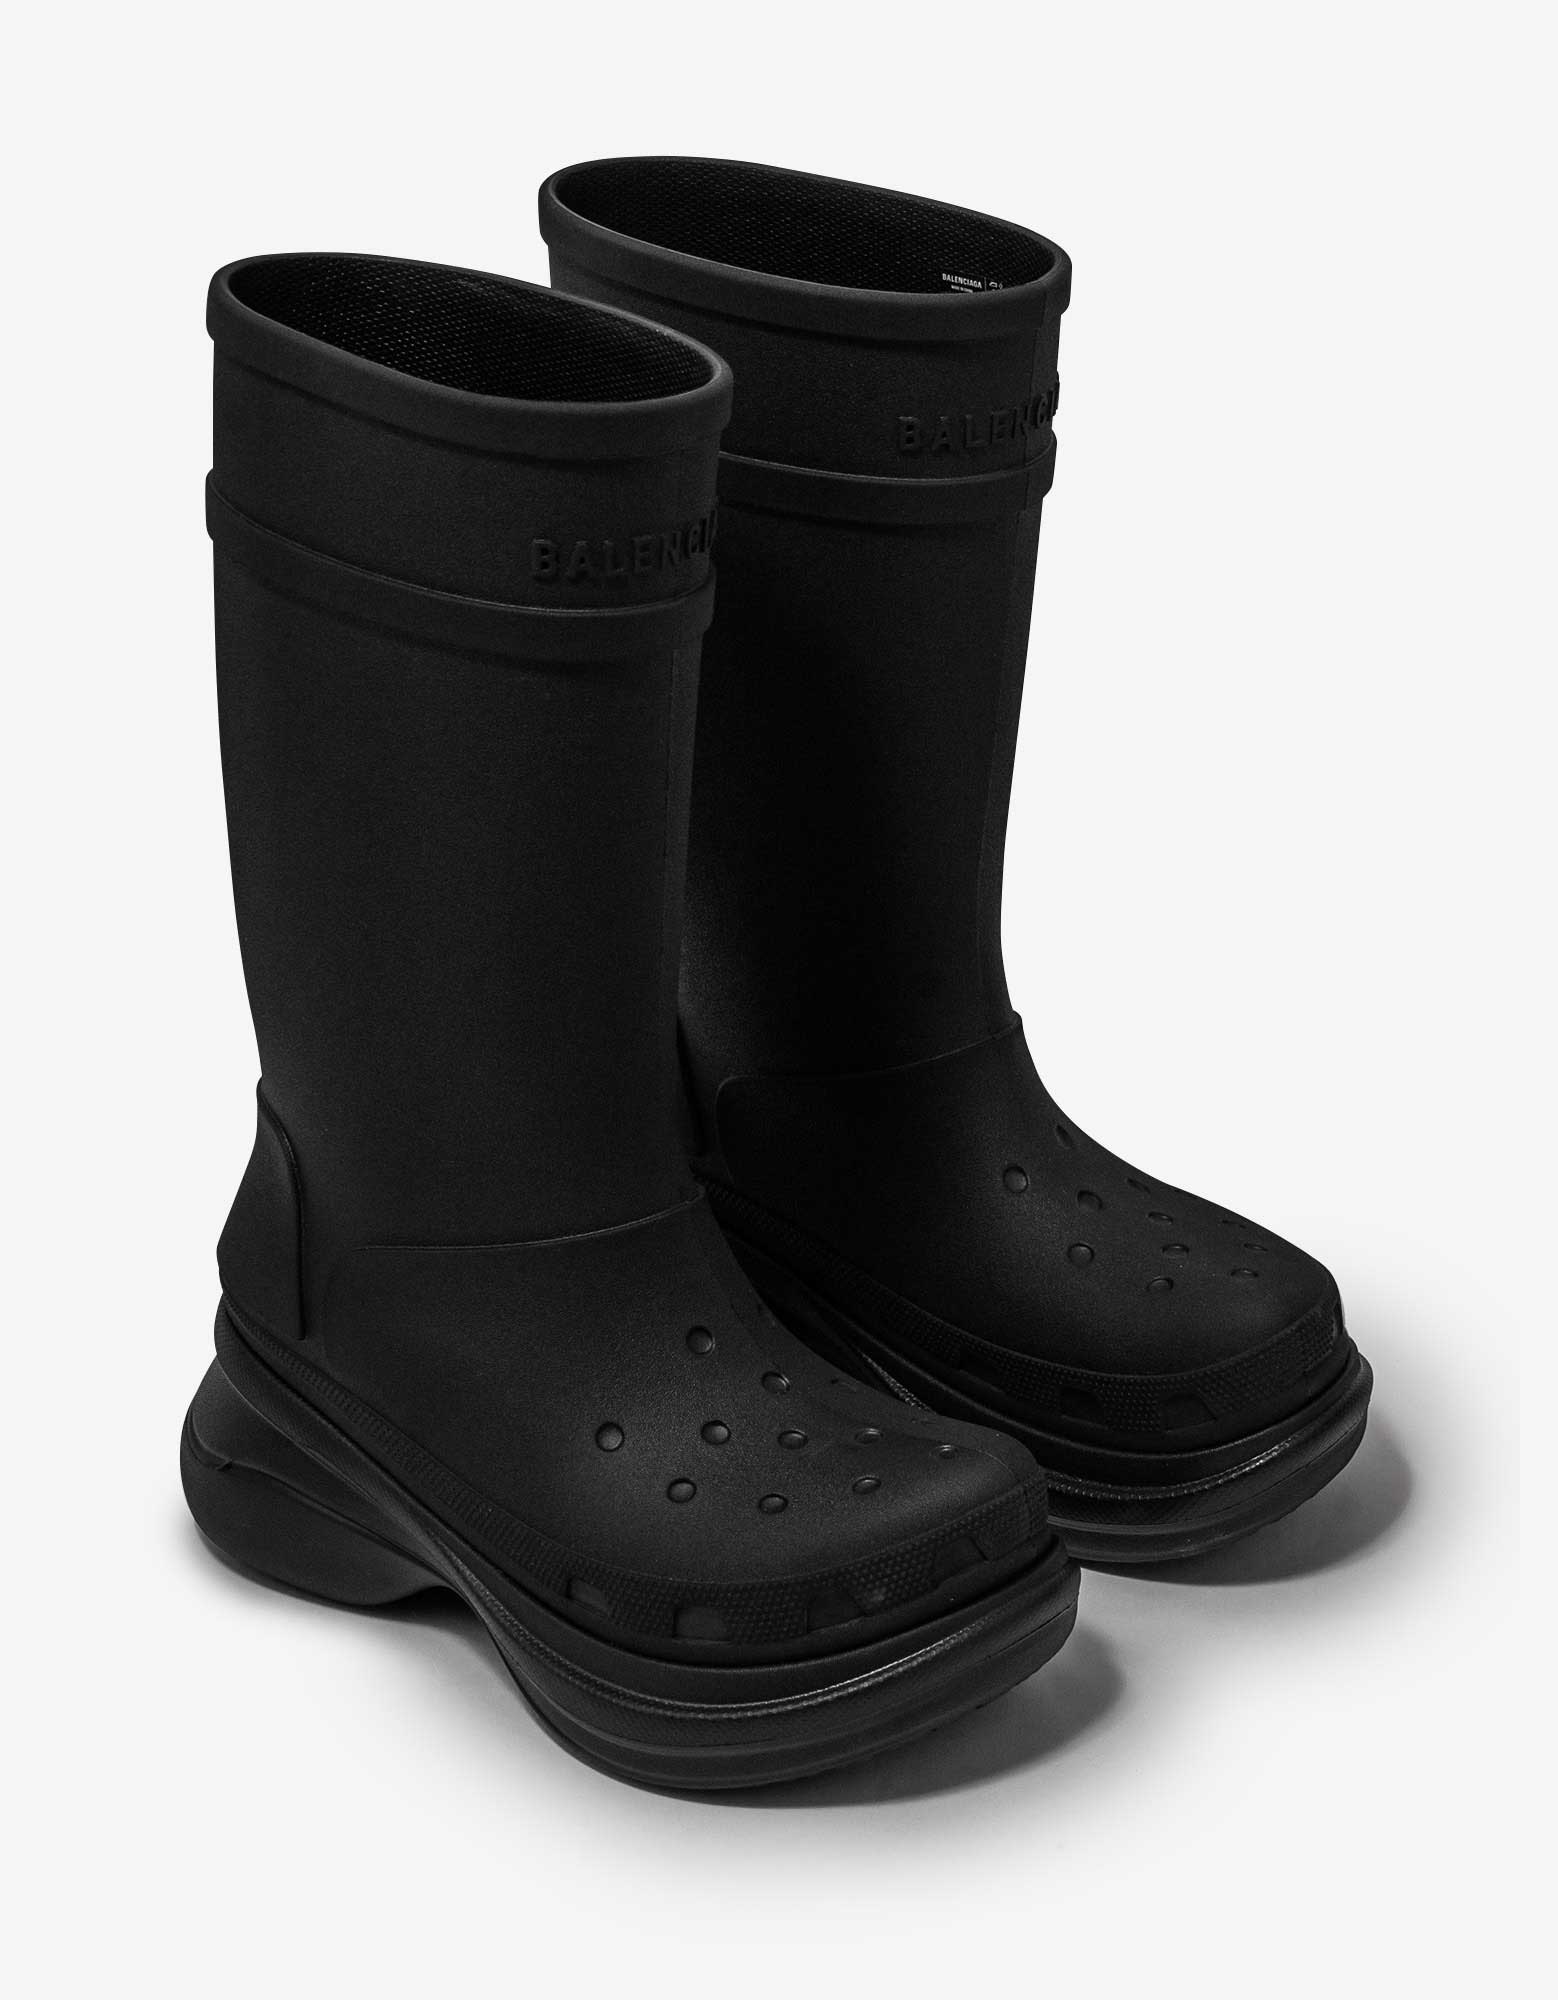 Black Crocs Boots - 1